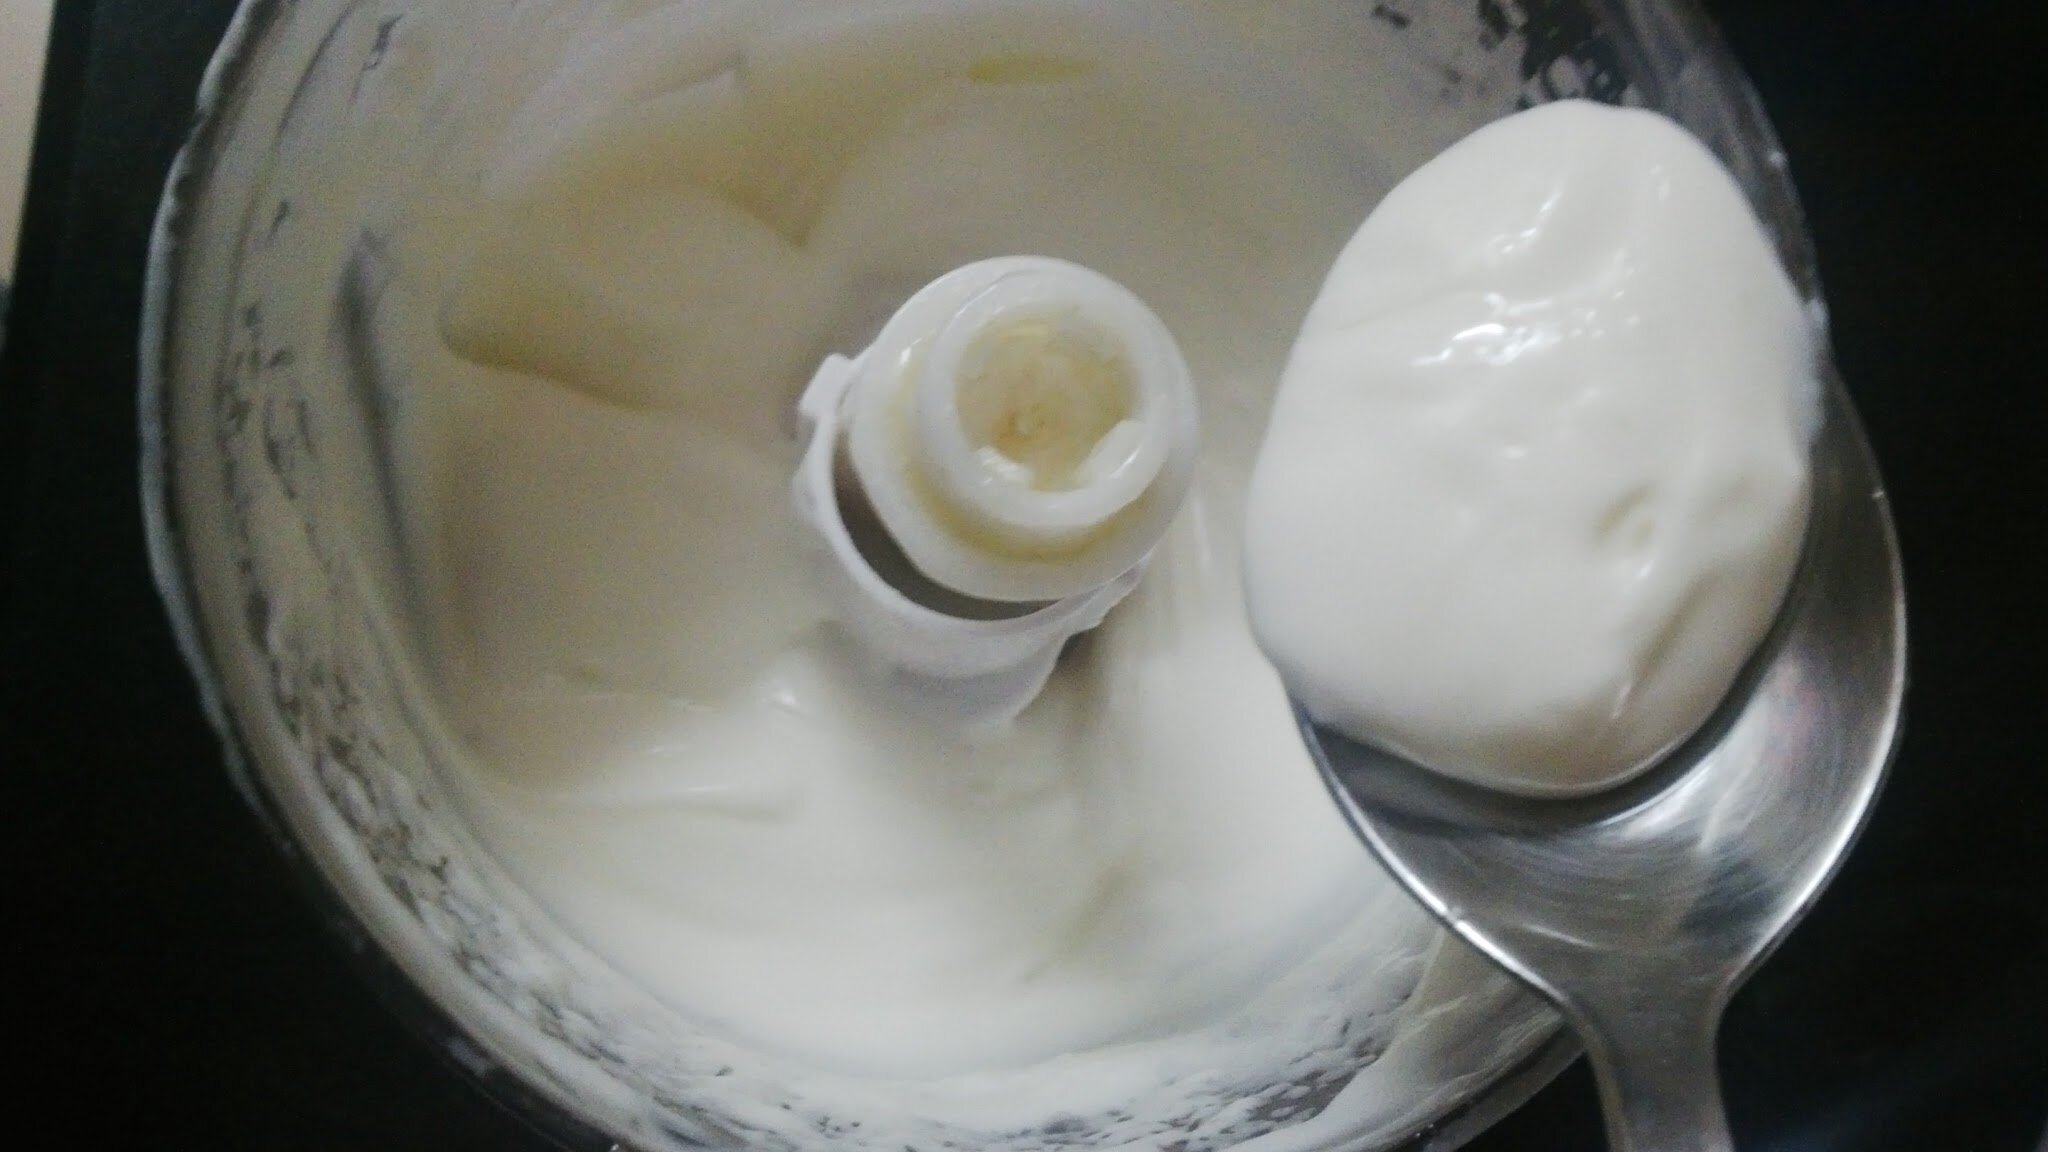 Oil & cream emulsified to make mayo.